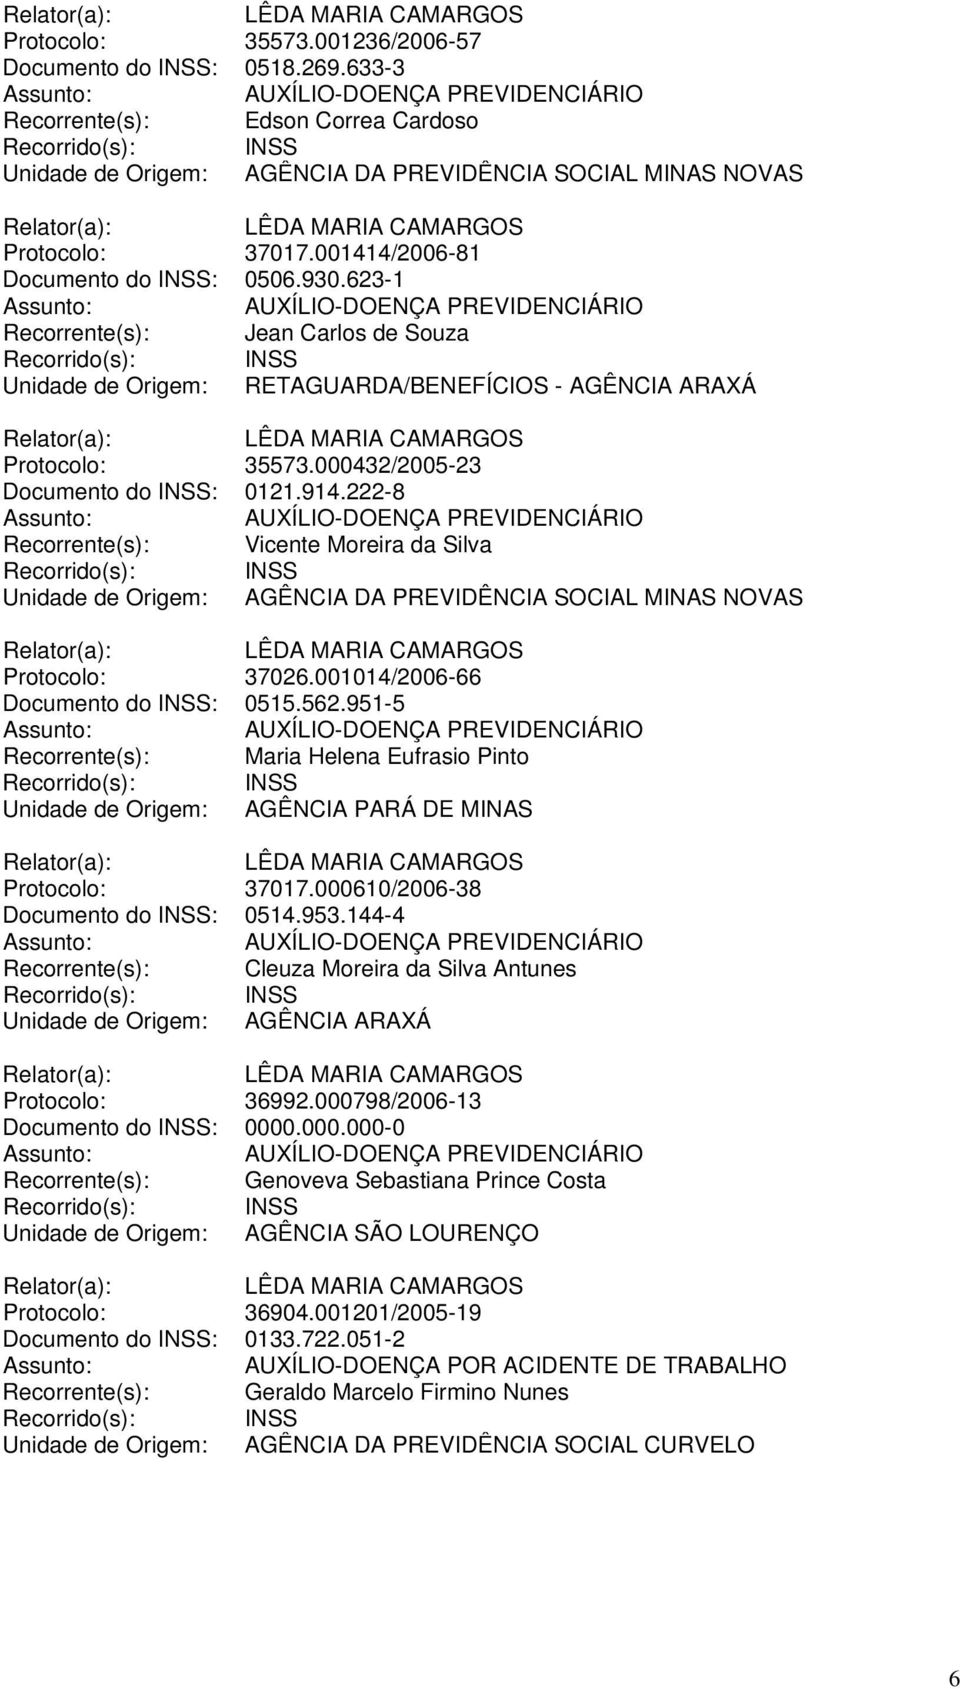 914.222-8 Recorrente(s): Vicente Moreira da Silva Unidade de Origem: AGÊNCIA DA PREVIDÊNCIA SOCIAL MINAS NOVAS Protocolo: 37026.001014/2006-66 Documento do INSS: 0515.562.